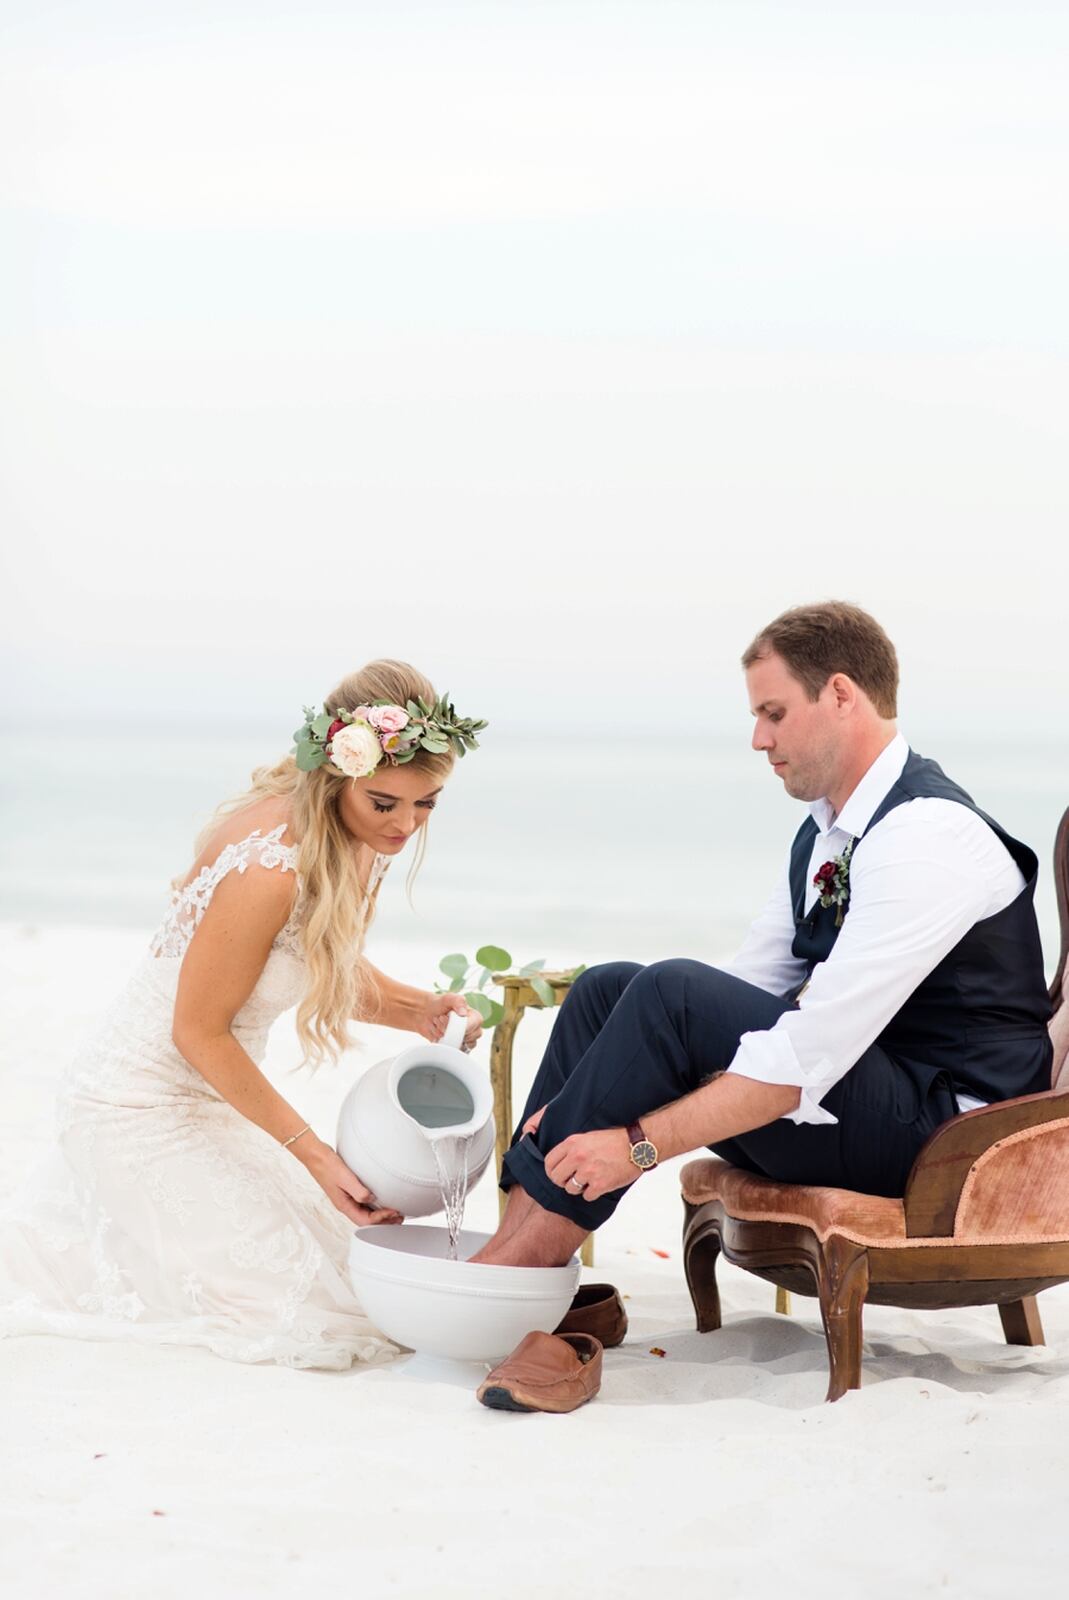 Noiva de joelhos com um jarro branco de água nas mãos derramando a água em cima dos pés do noivo que está sentado em uma cadeira à sua frente e com os pés dentro de uma bacia